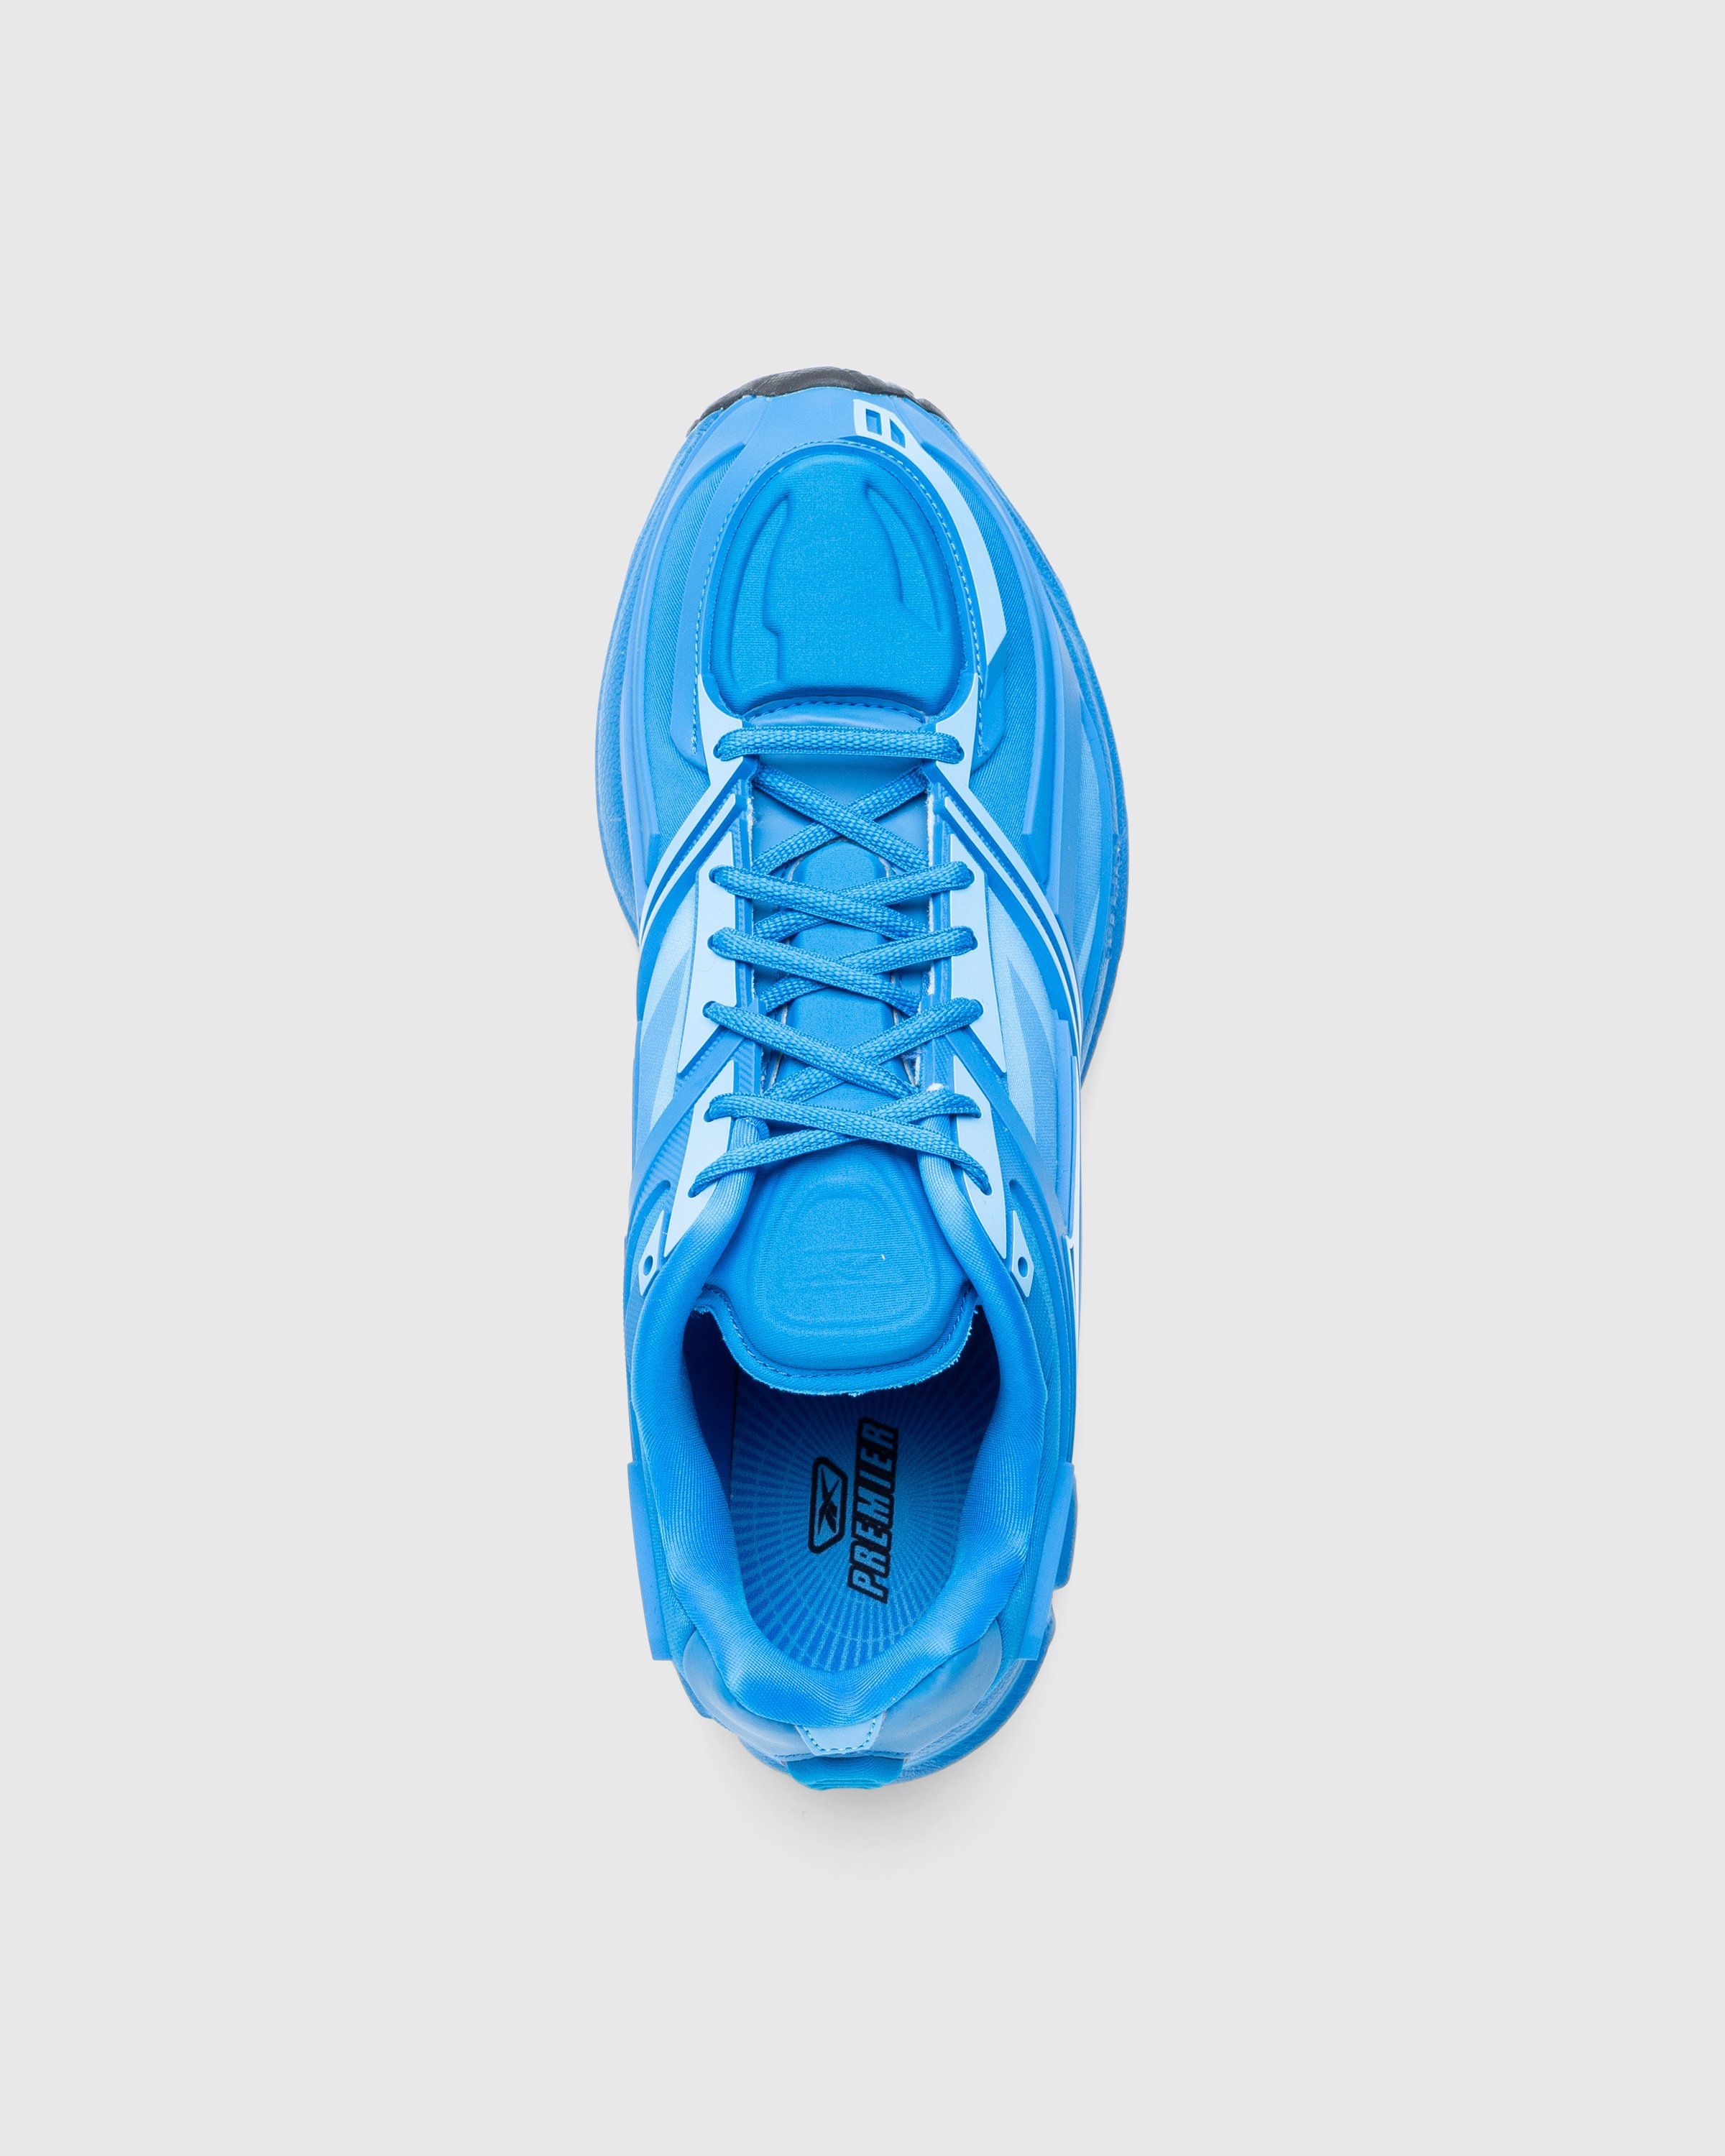 Reebok - PREMIER ROAD LIGHT BLUE/LIGHT BLUE - Footwear - Blue - Image 4